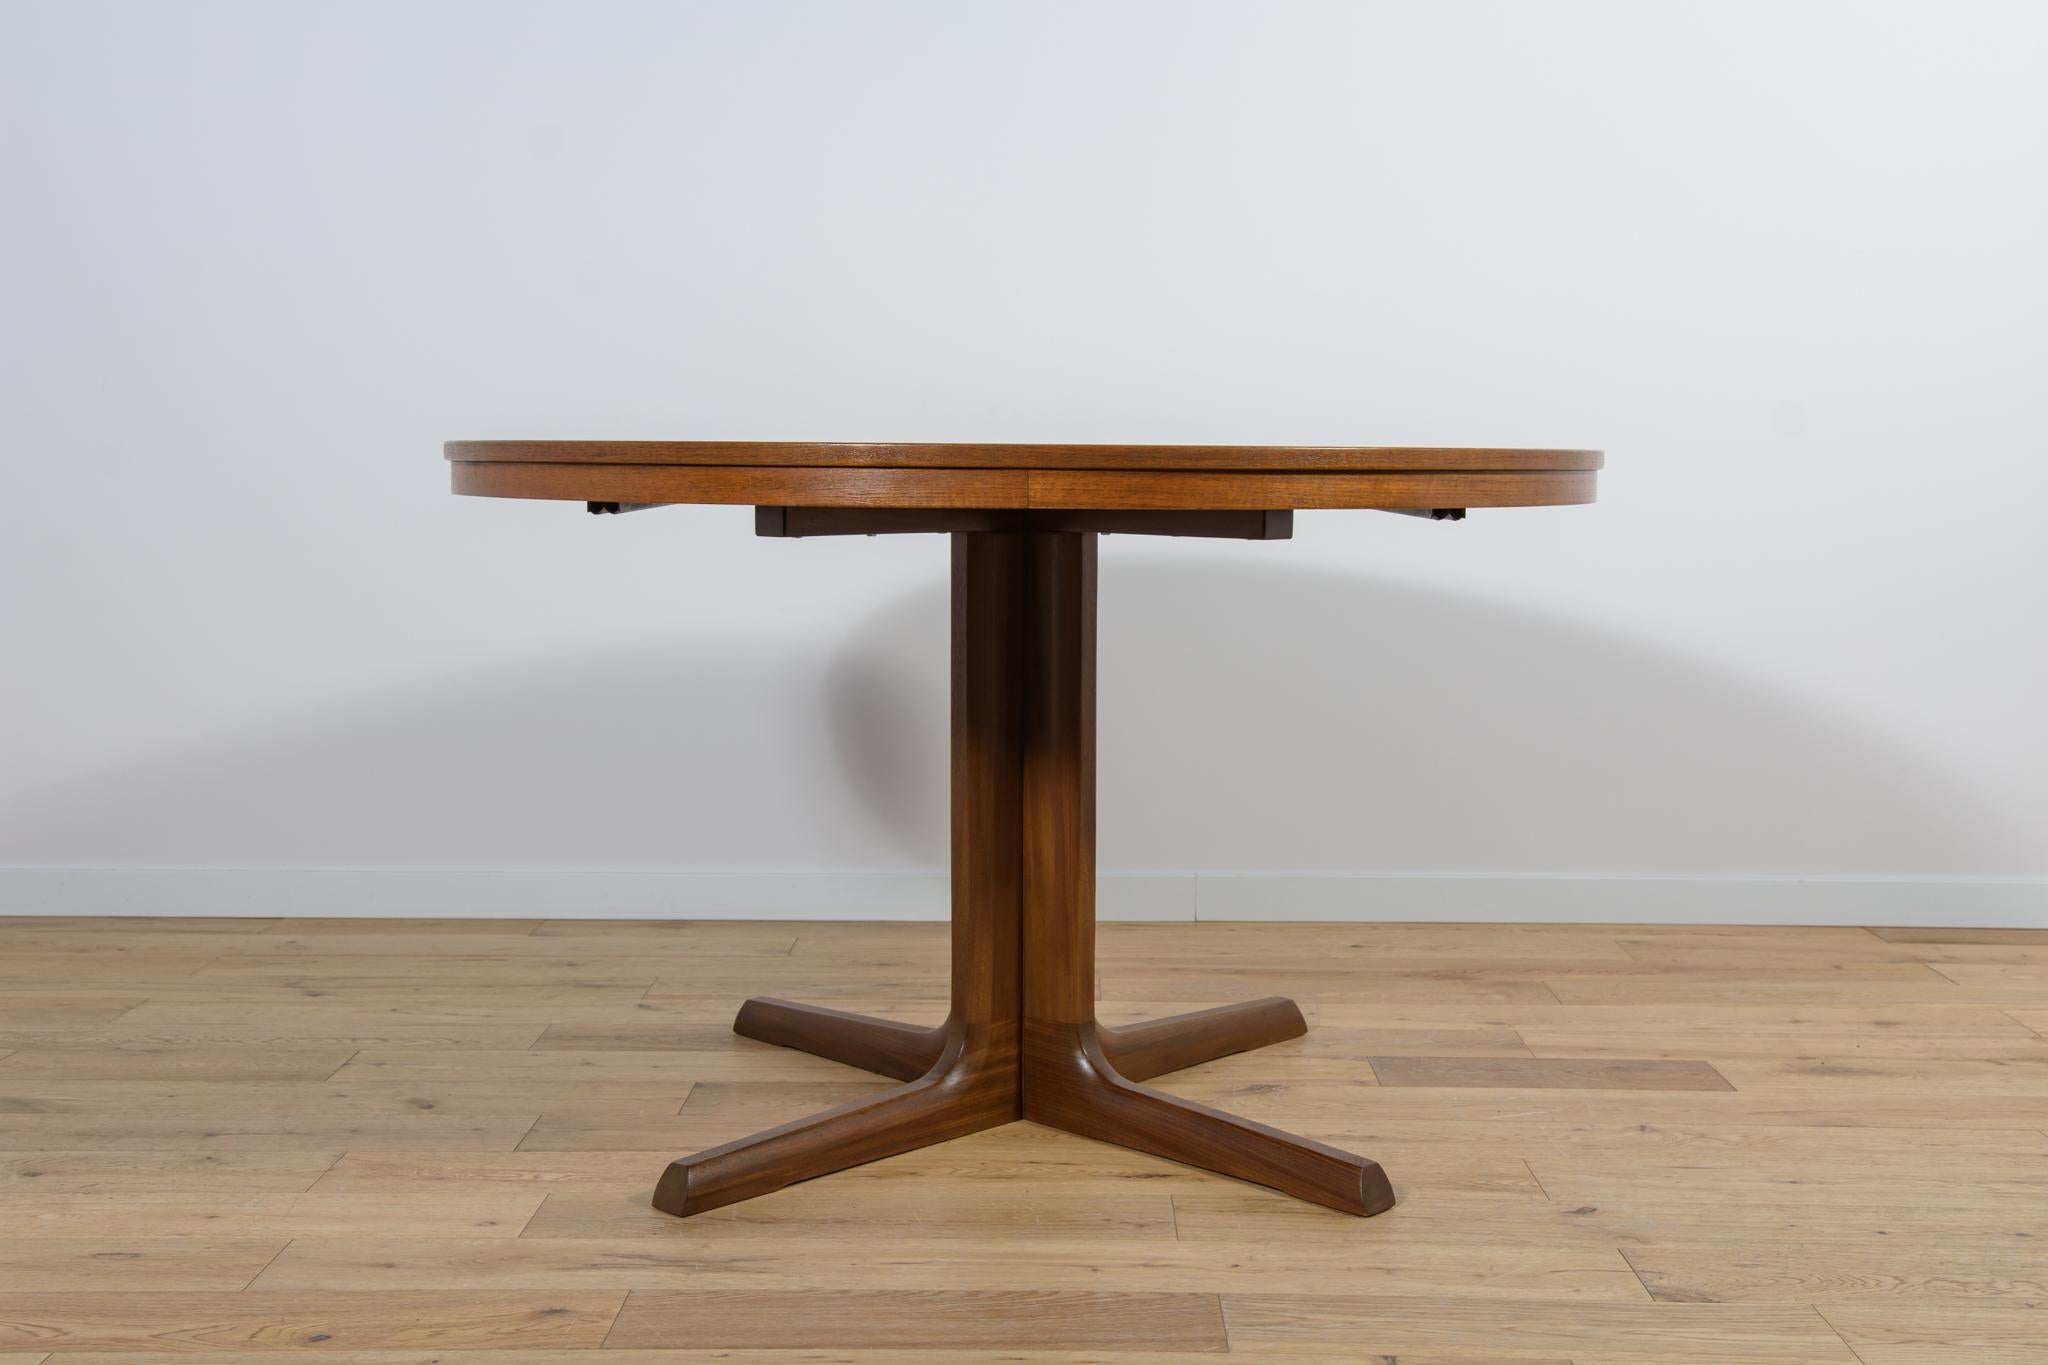 Runder ausziehbarer Tisch aus Teakholz, hergestellt in Dänemark in den 1960er Jahren. Der Tisch wurde nach einer umfassenden Tischlerrenovierung von der alten Oberfläche gereinigt, mit Eichenholzbeize gestrichen und mit starkem seidenmattem Lack